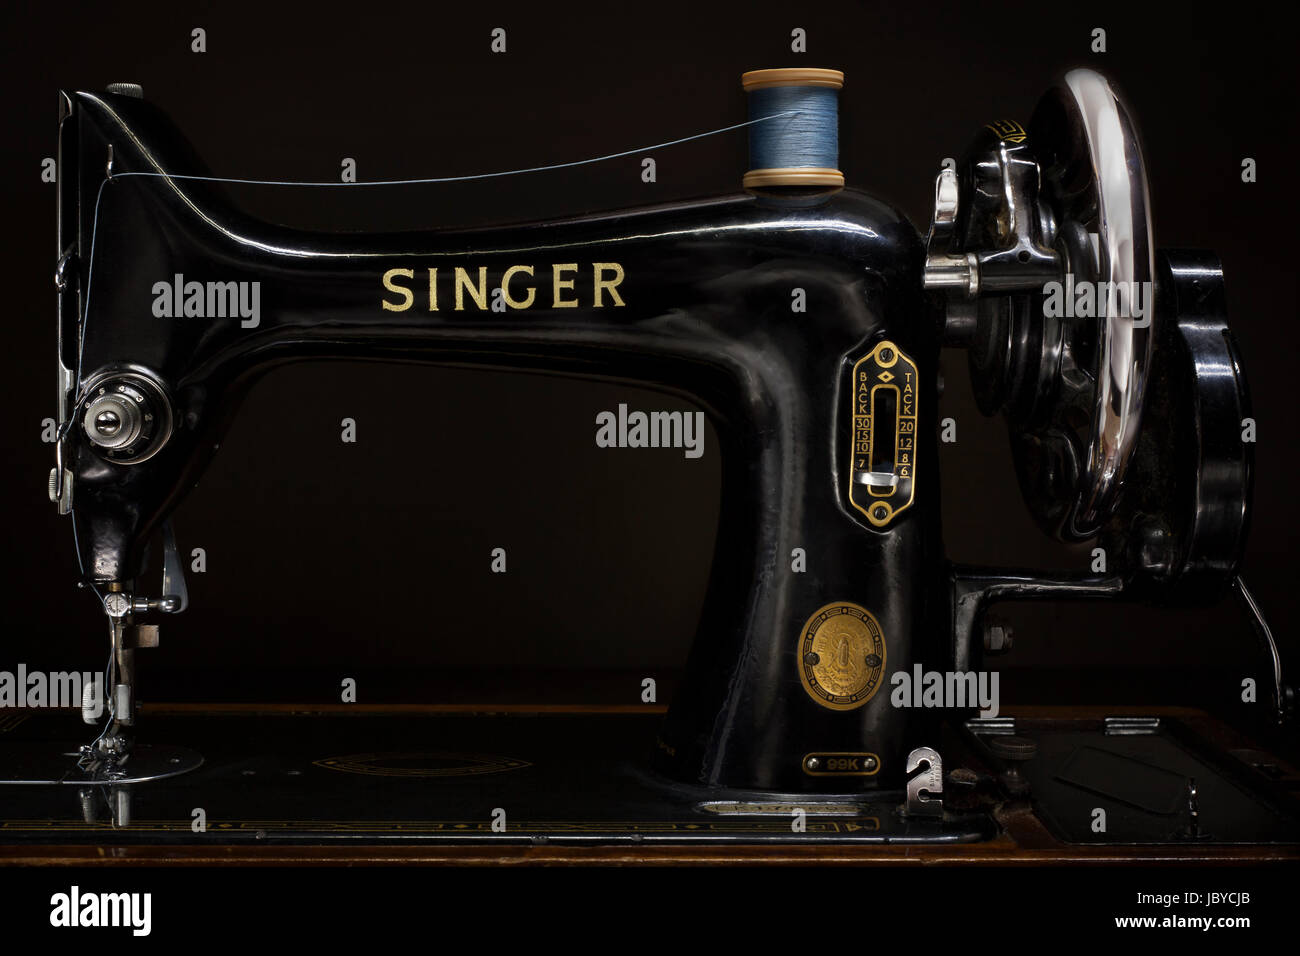 Belle conception du produit depuis le début des années 1900, la machine à coudre Singer 99K a été introduit en 1911 et est resté en production jusqu'en 1950. Banque D'Images